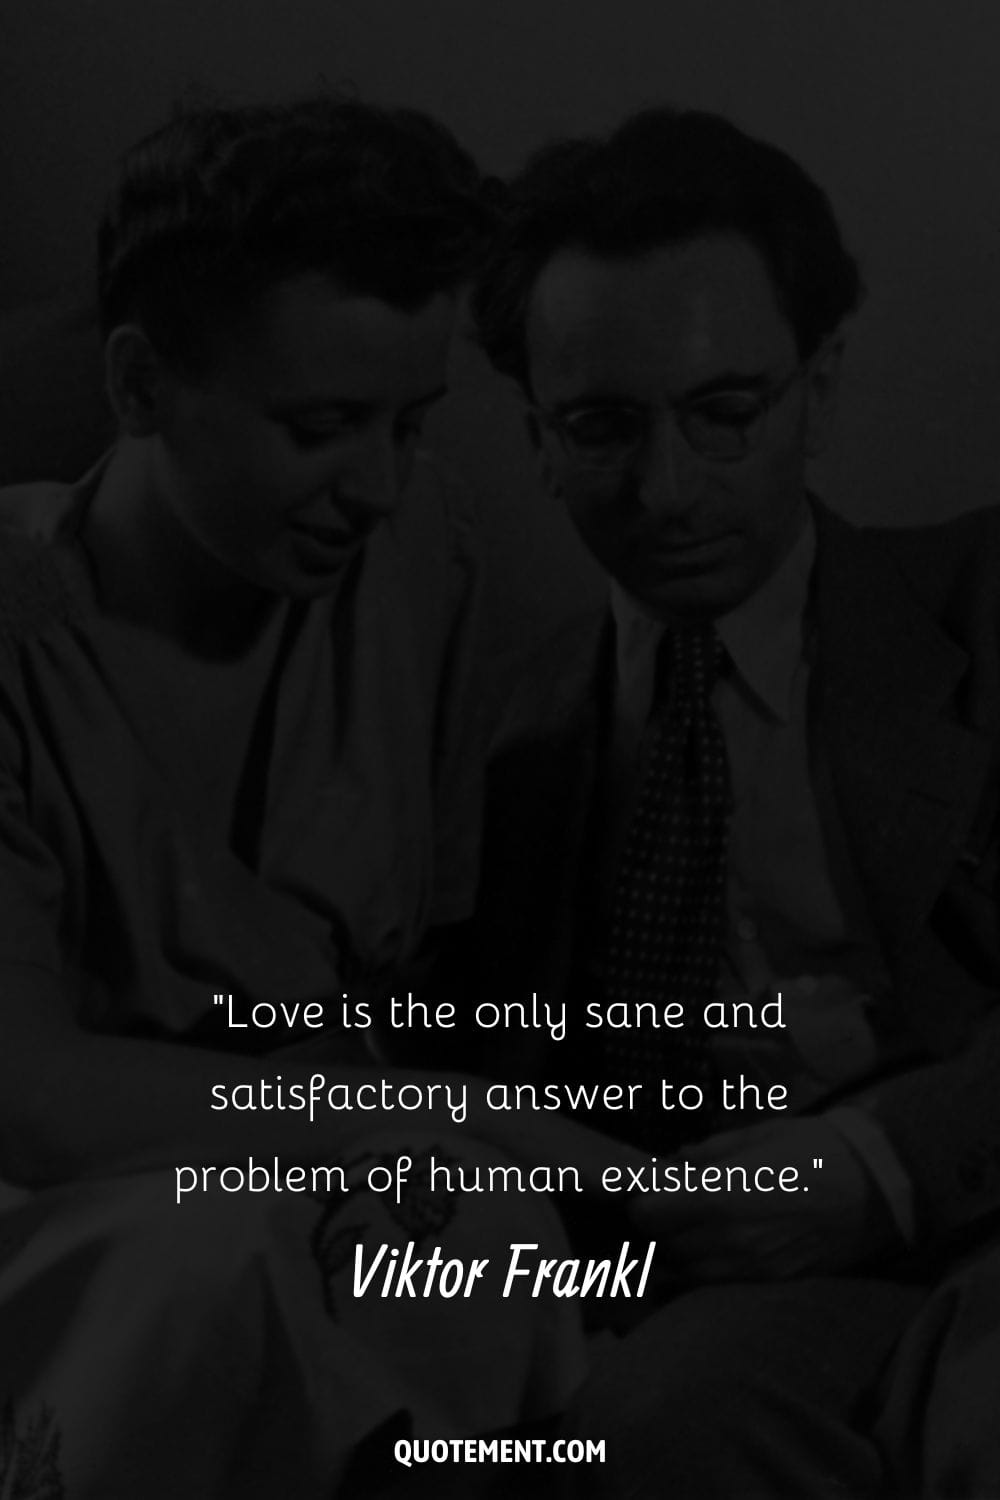 Imagen de Viktor Frankl con una mujer que representa su cita sobre el amor.